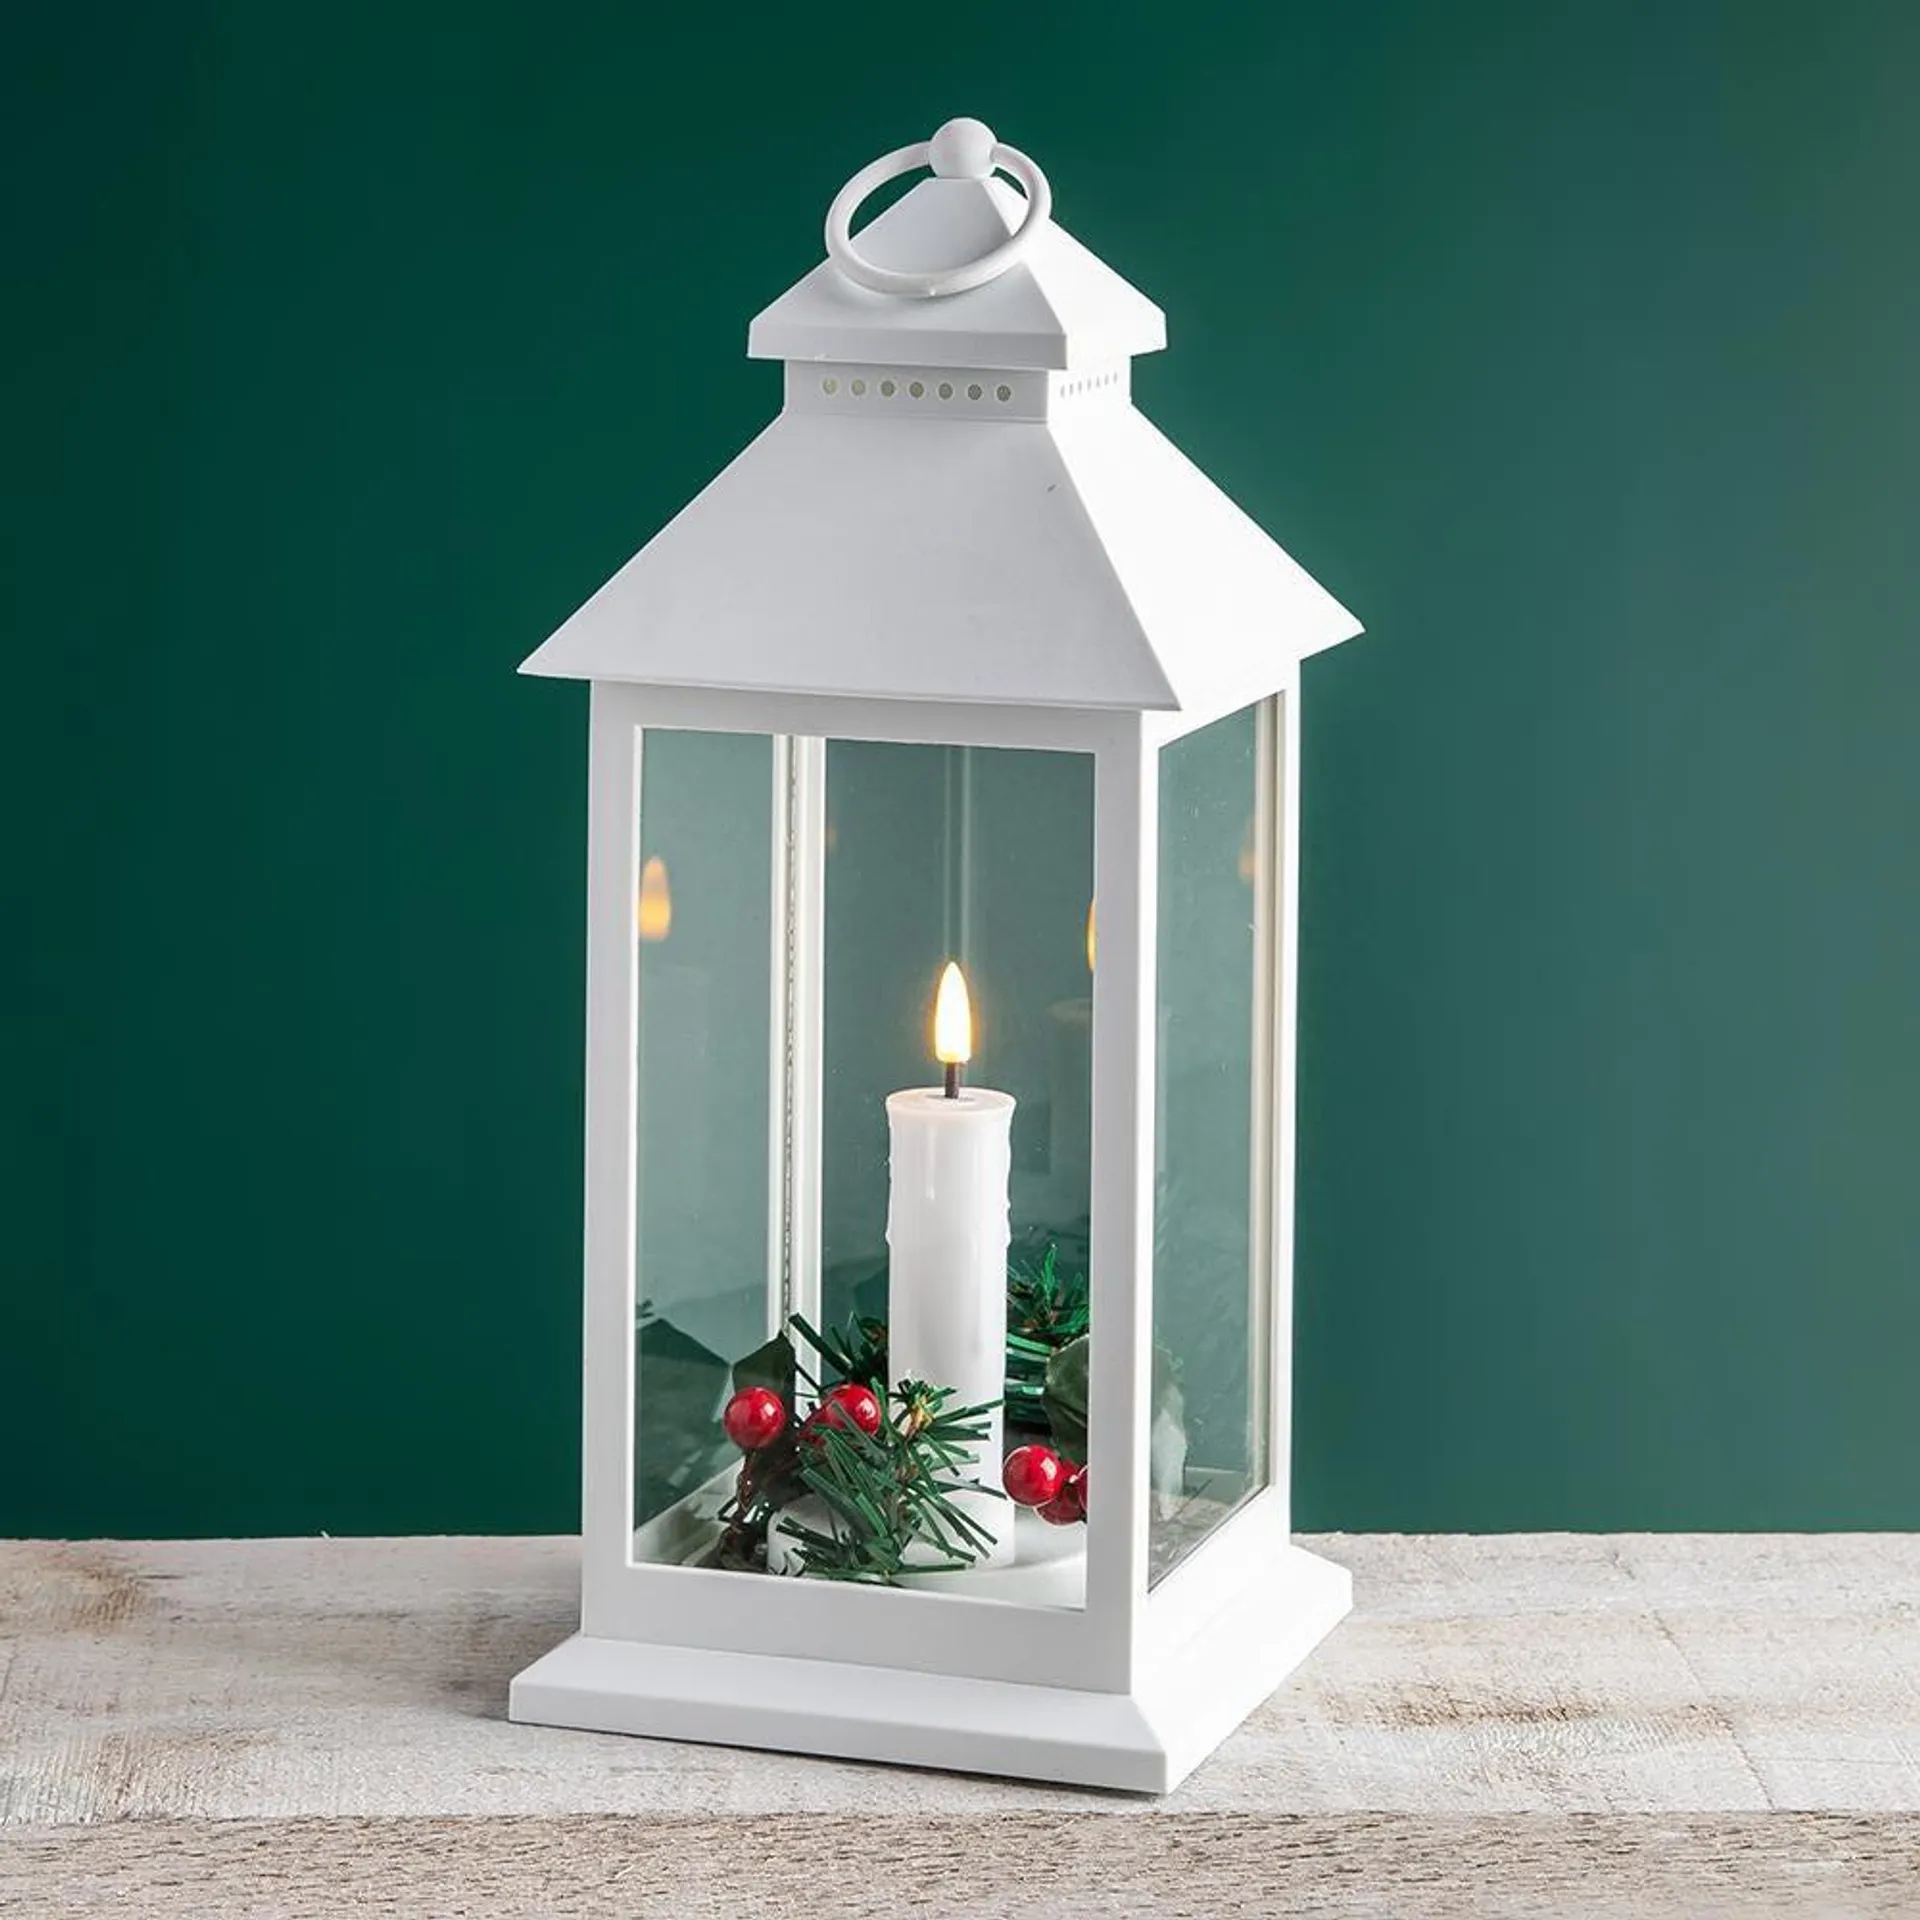 KSP Christmas 'Holly Wreath' LED Plastic Lantern (Large White)